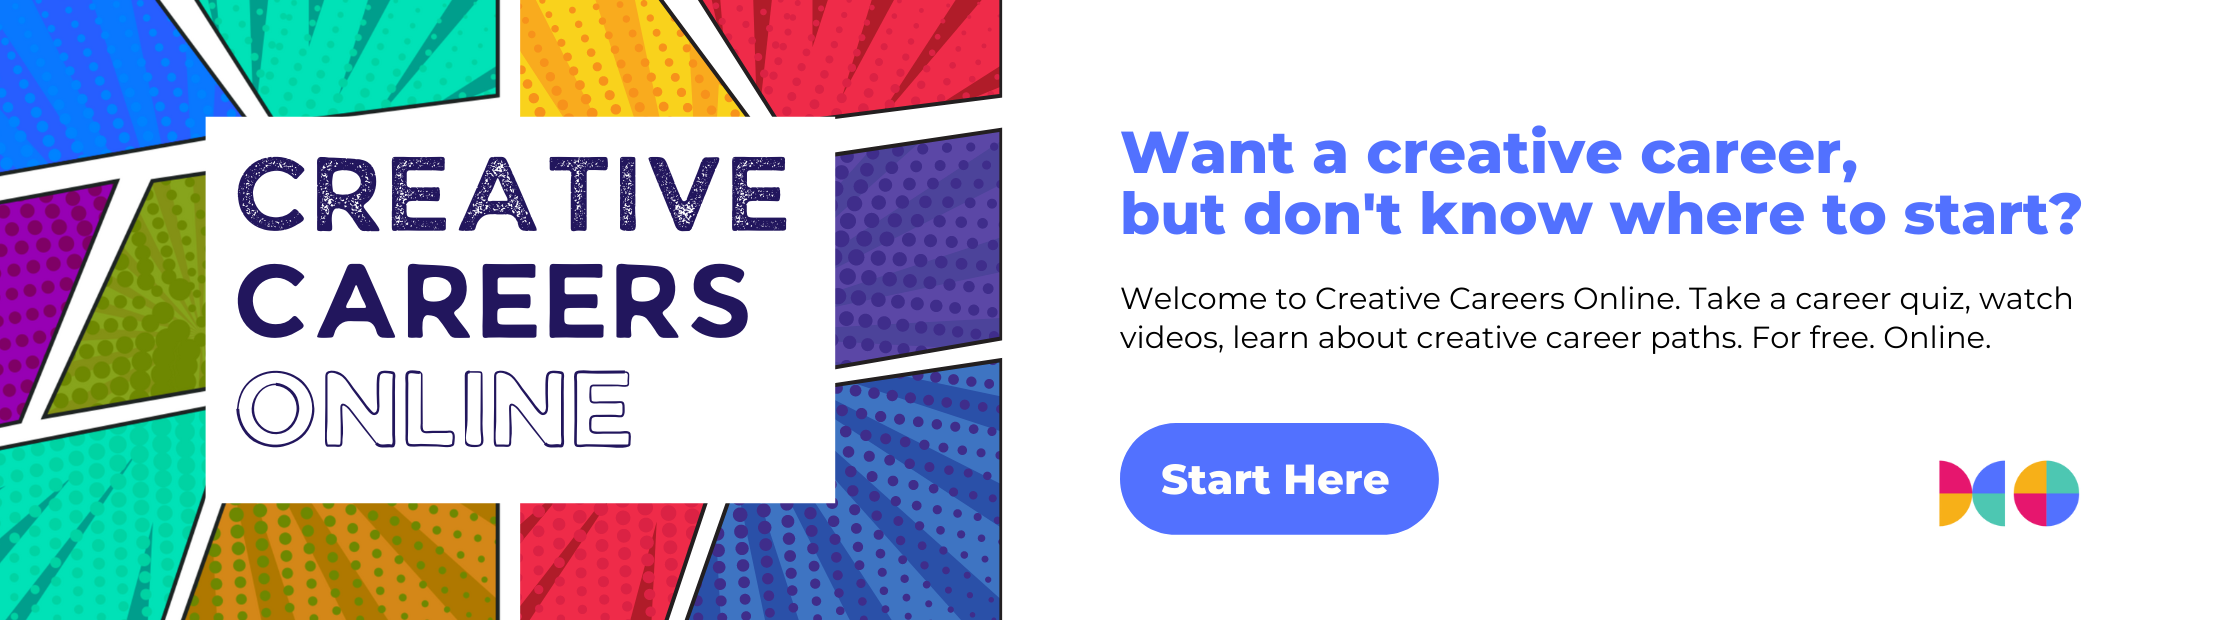 Carreras creativas en línea